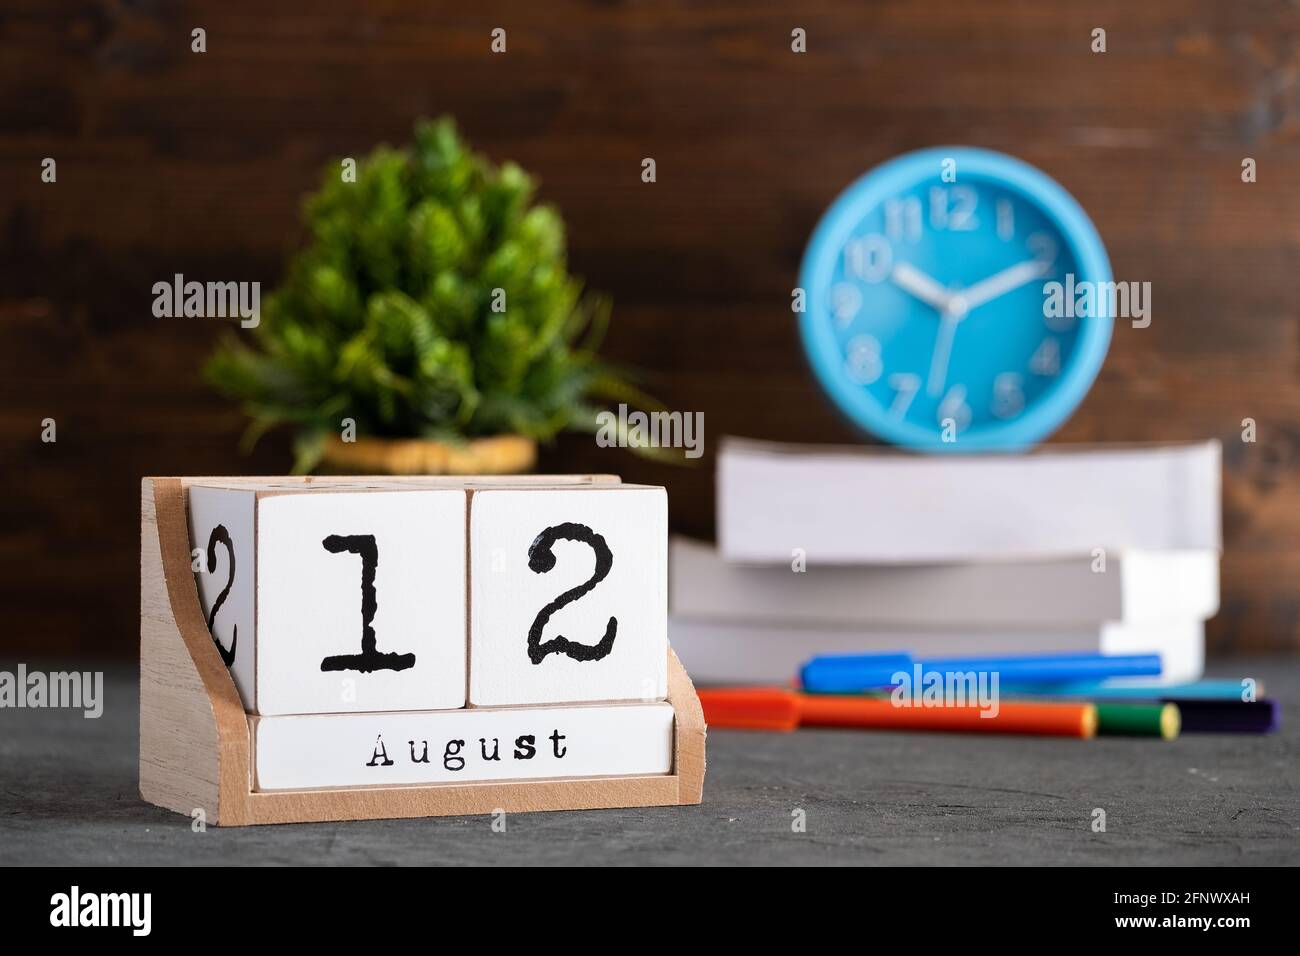 12 août. Août 12 calendrier cube en bois avec des objets flous sur fond. Banque D'Images